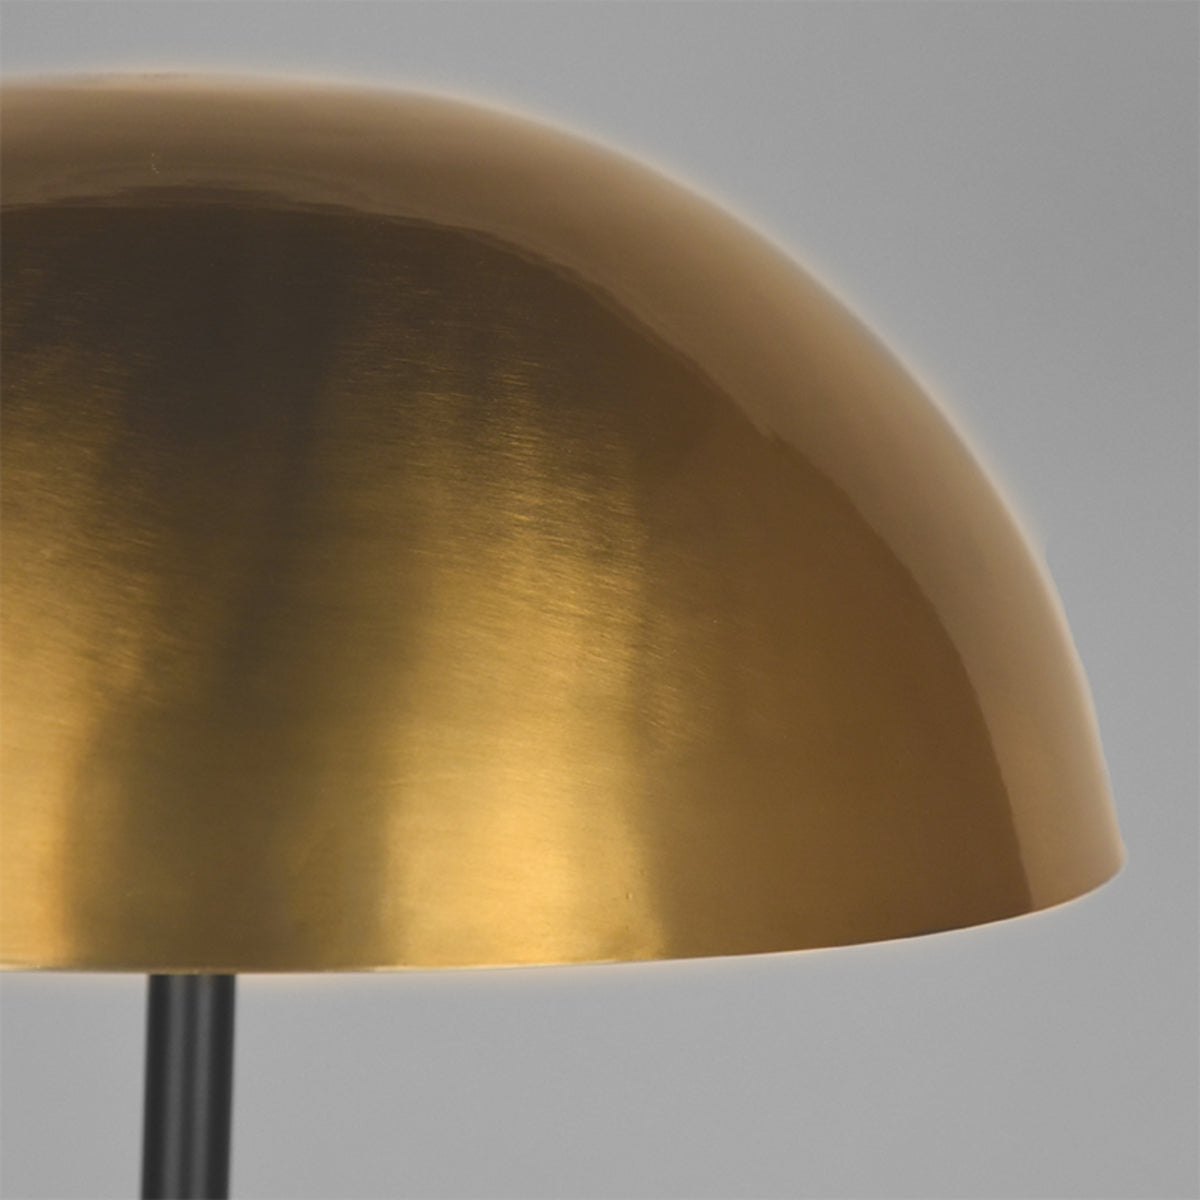 LABEL51 Vloerlamp Globe - Antiek goud - Metaal